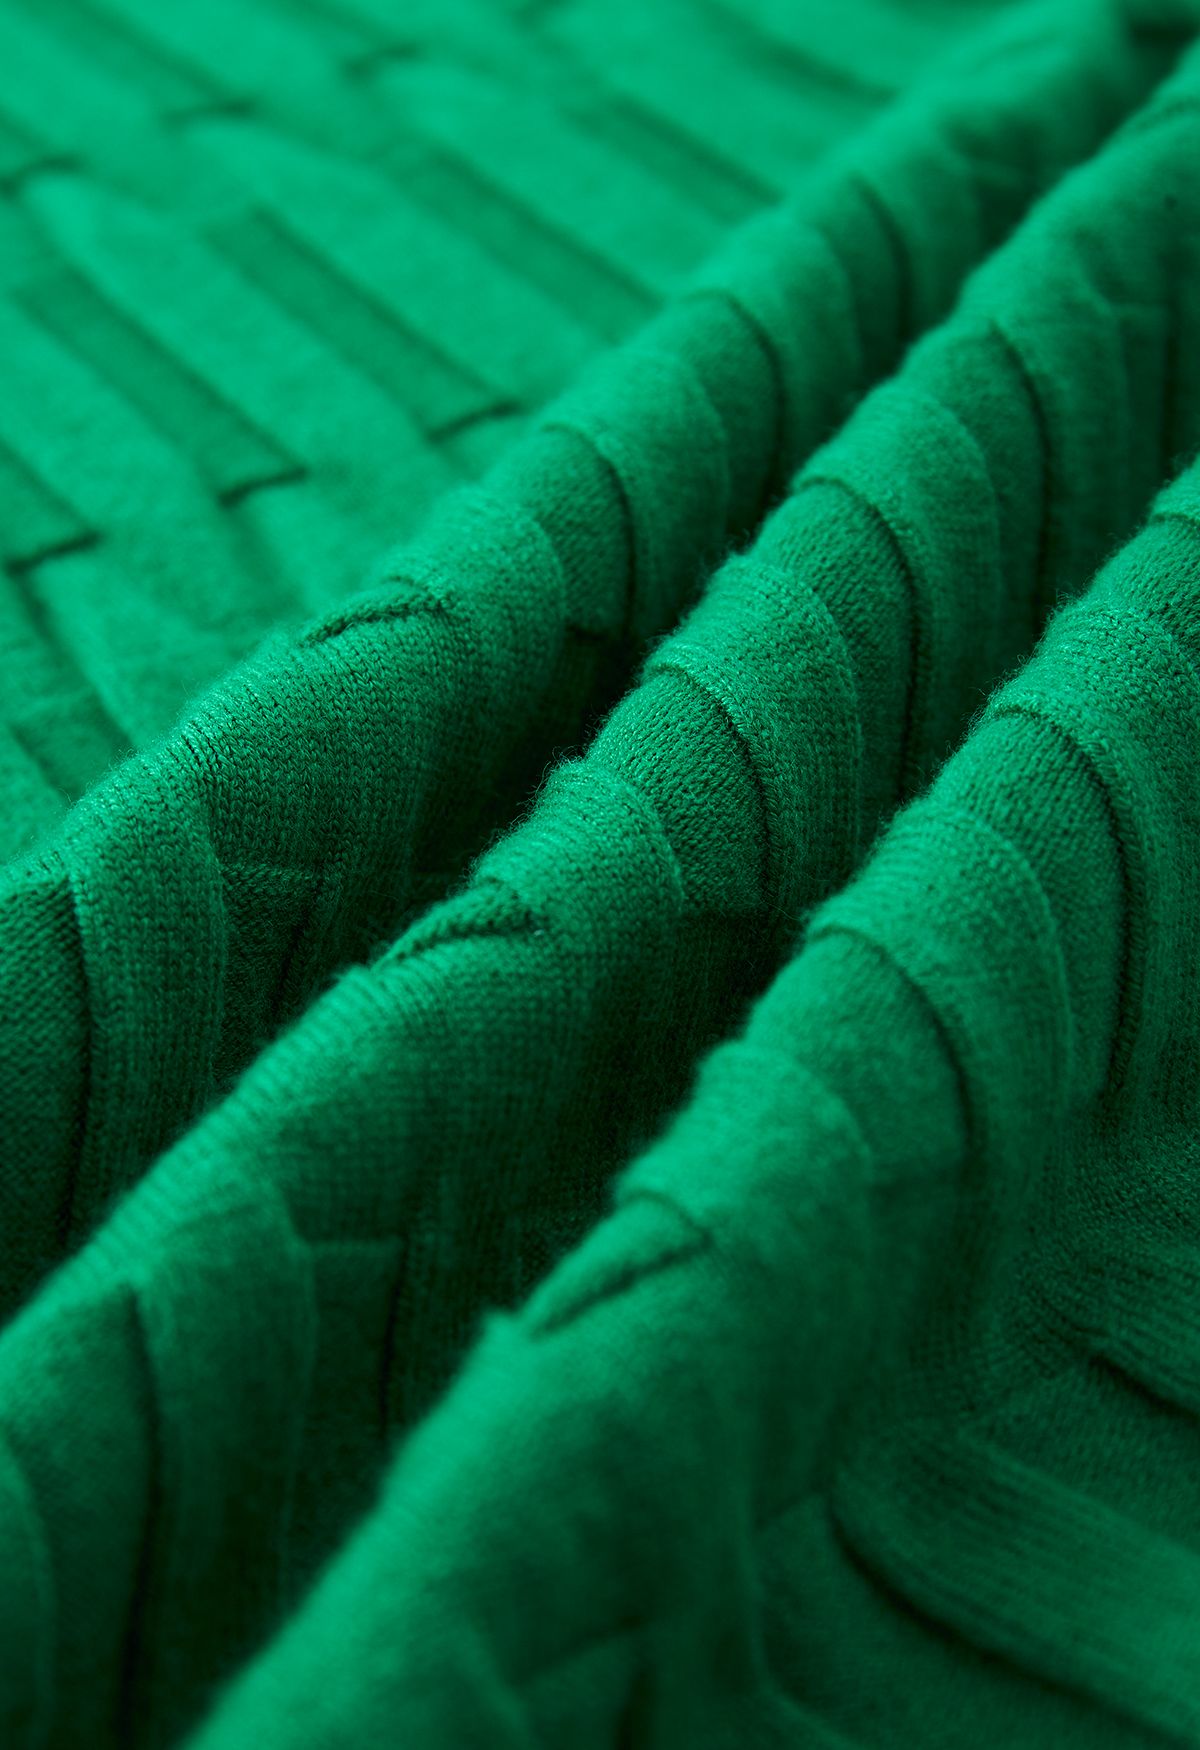 Saia lápis de malha com textura em relevo na cor verde